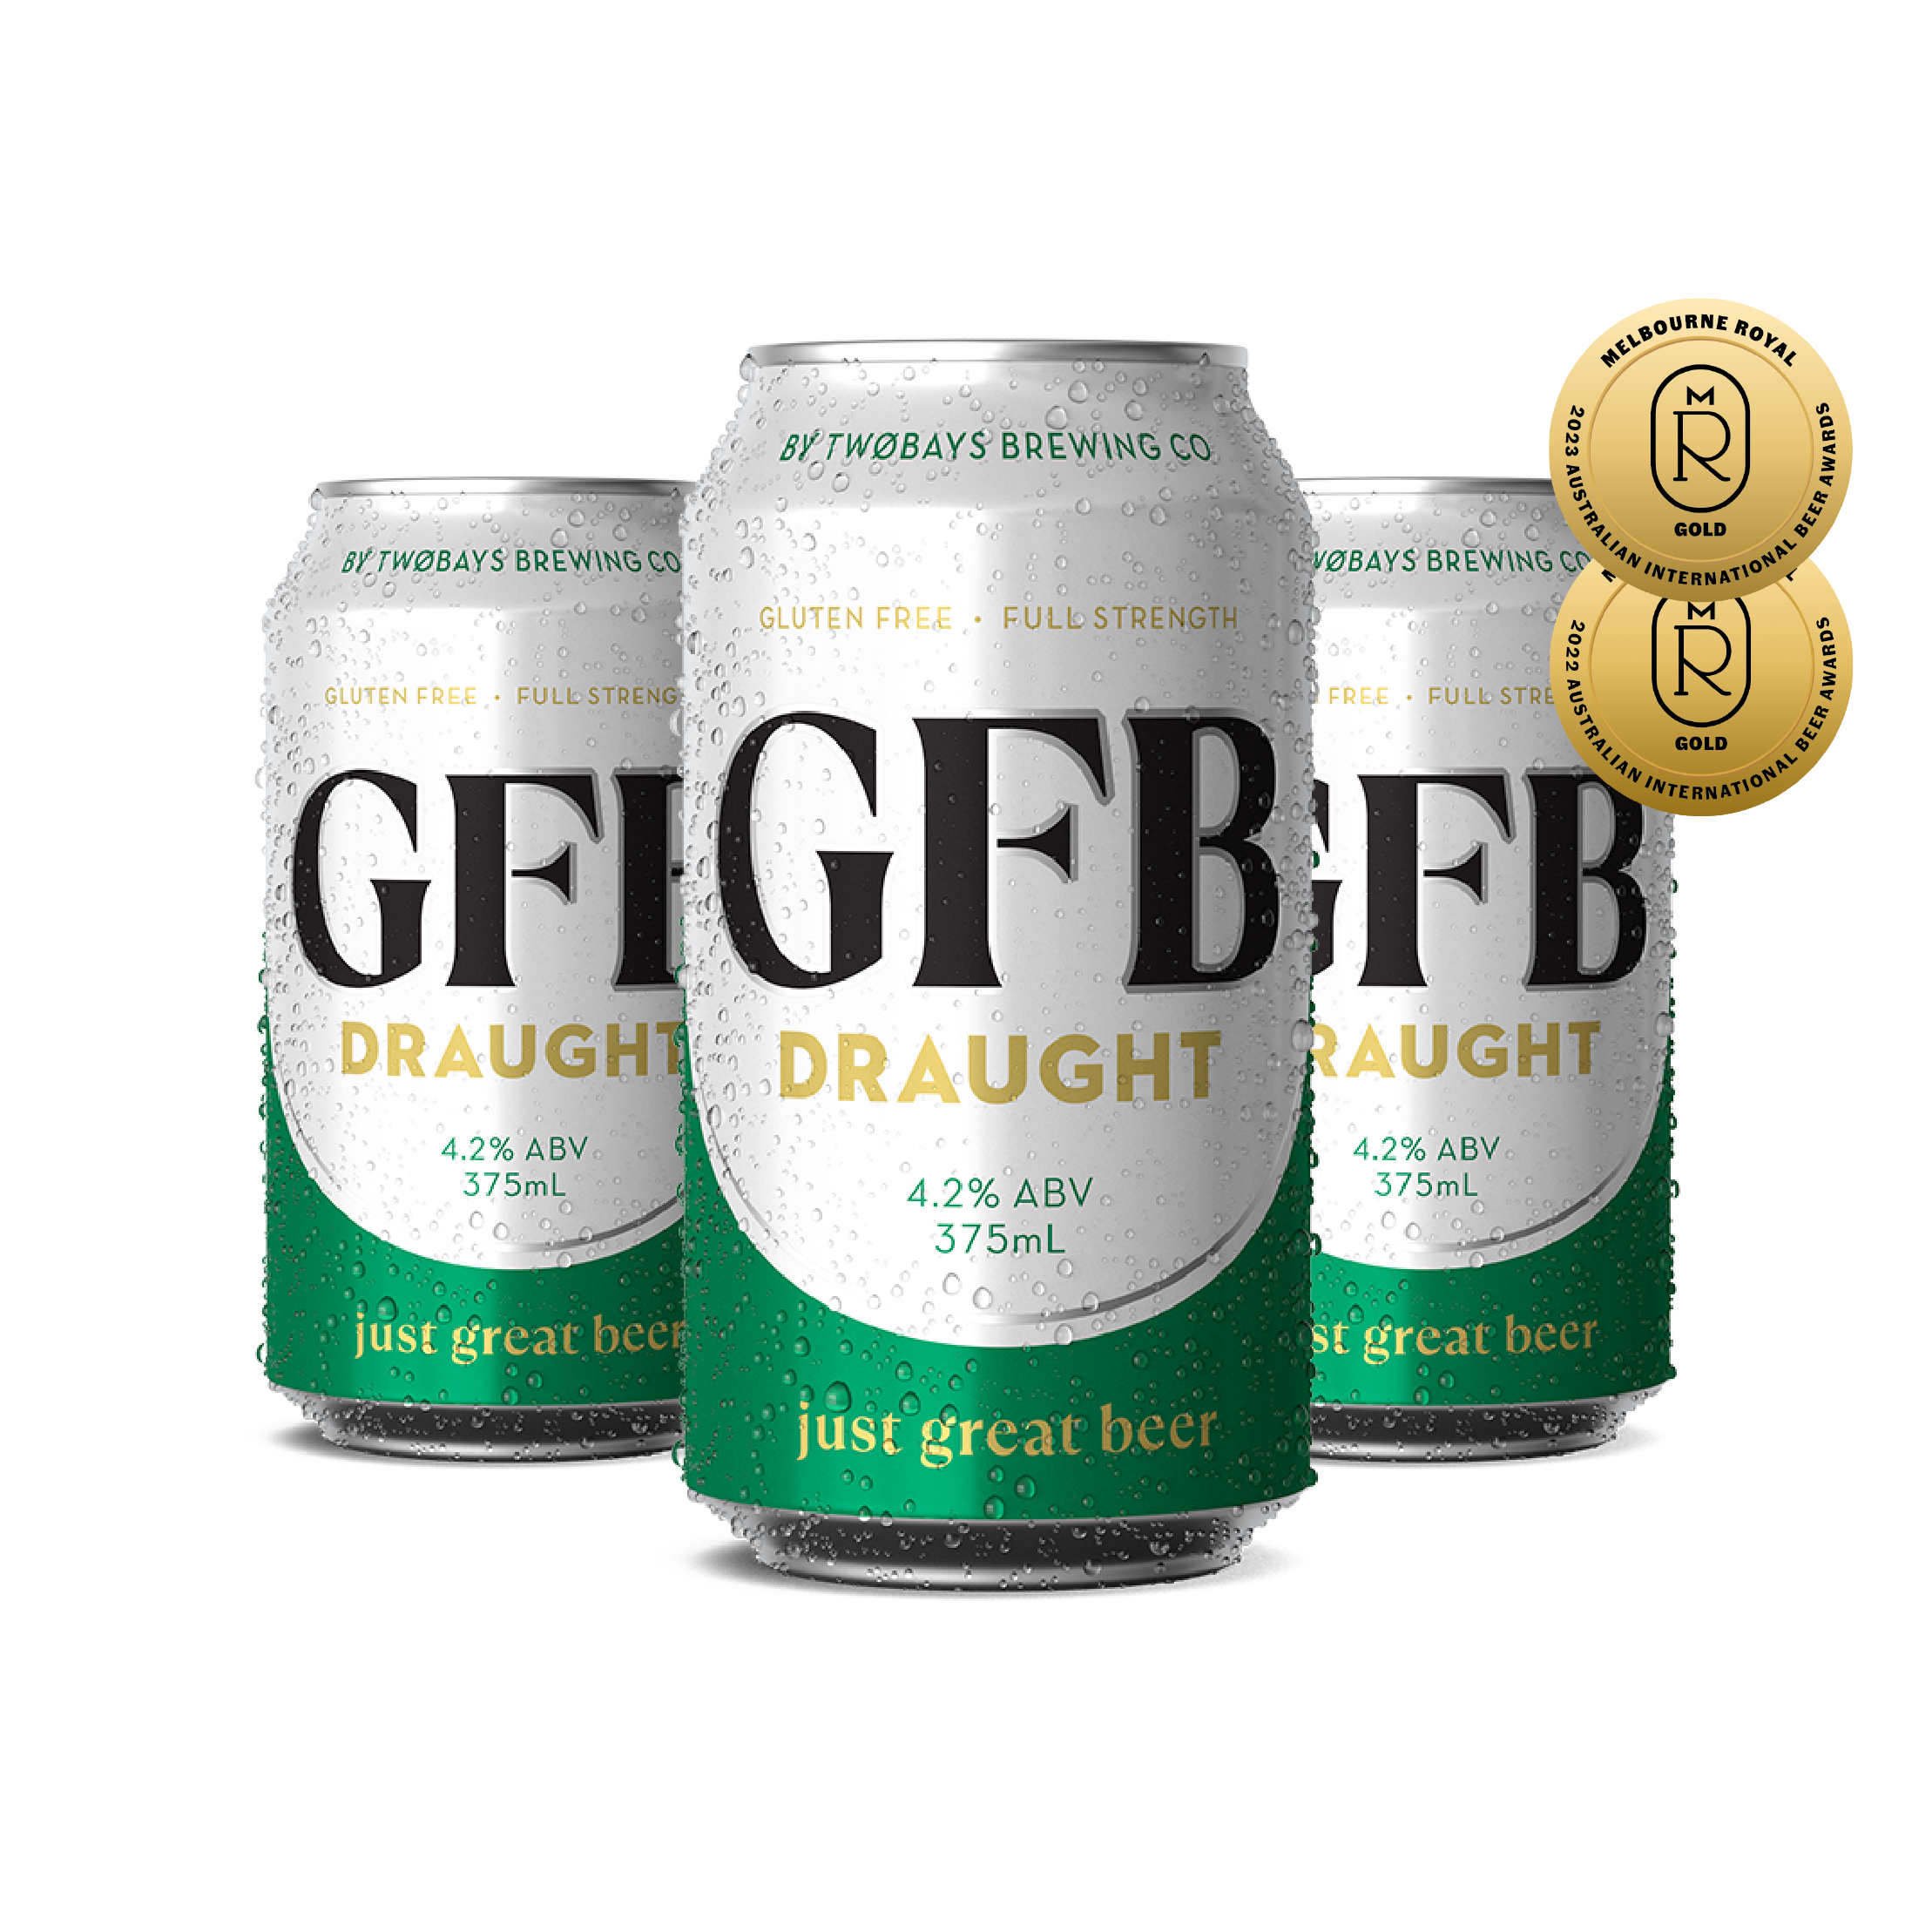 GFB Draught Beer Carton